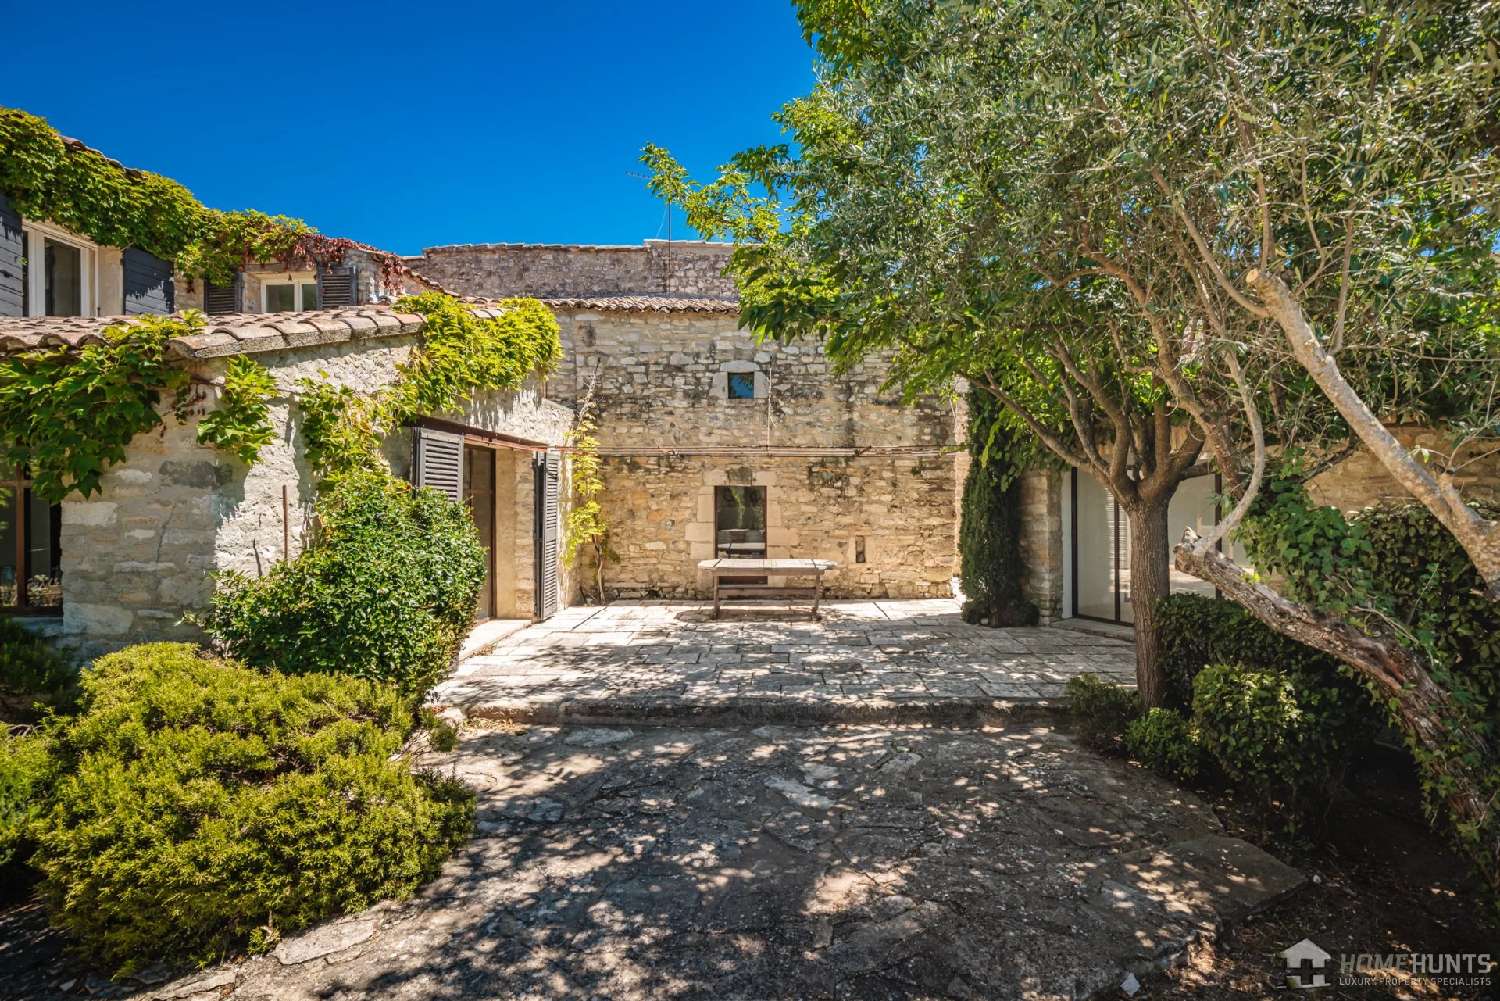  à vendre villa Murs Vaucluse 1